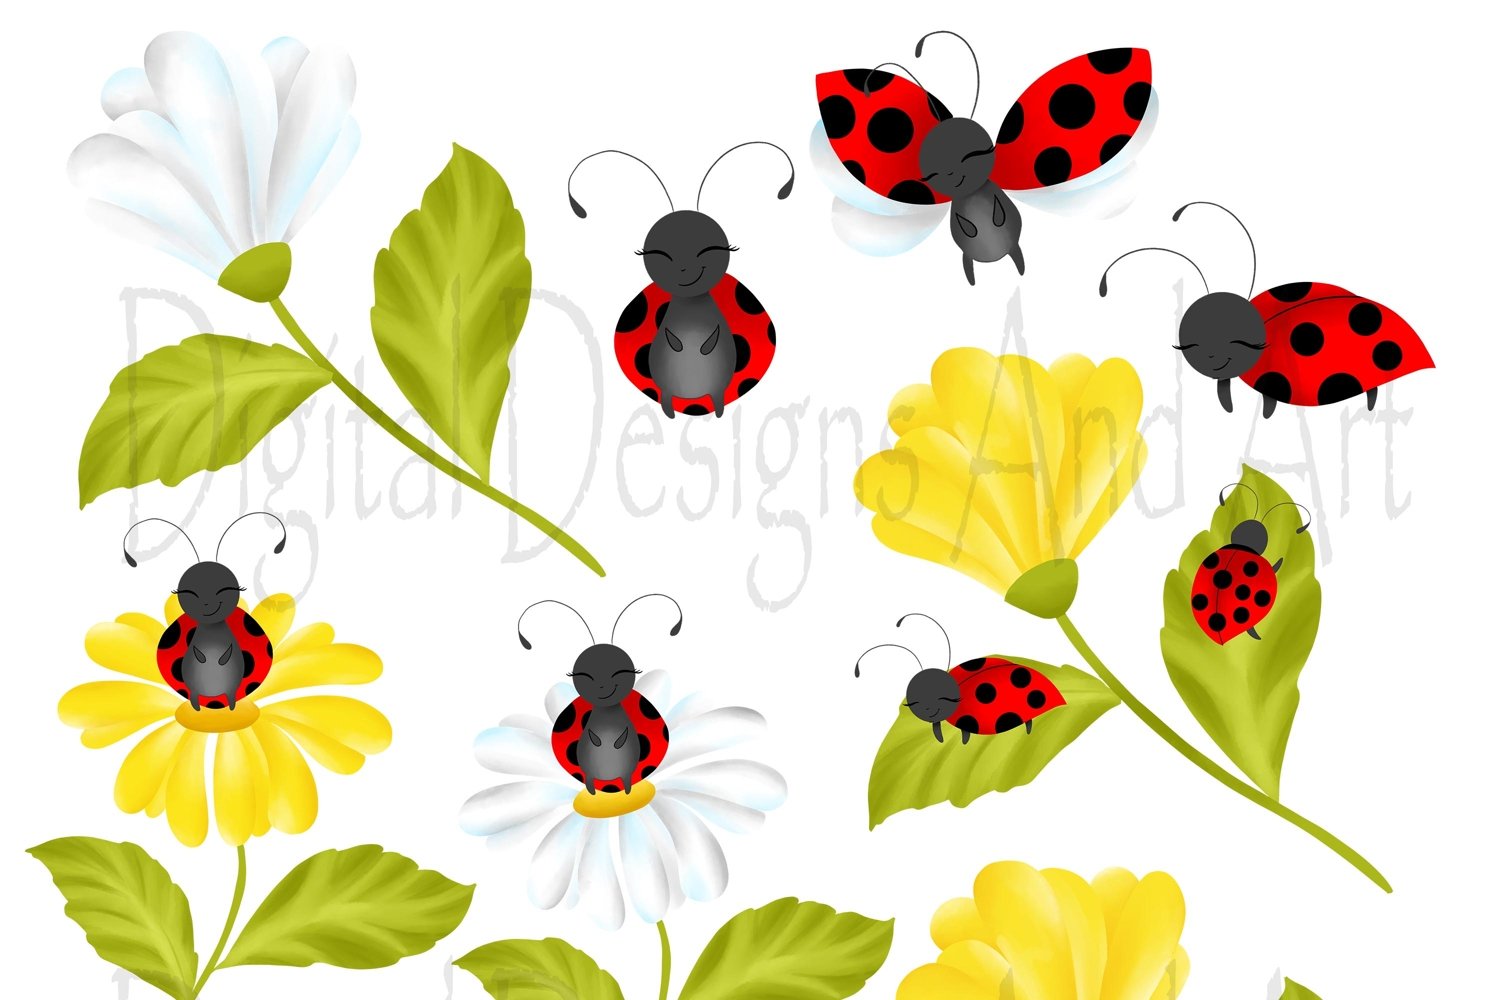 Ladybugs on flowers.